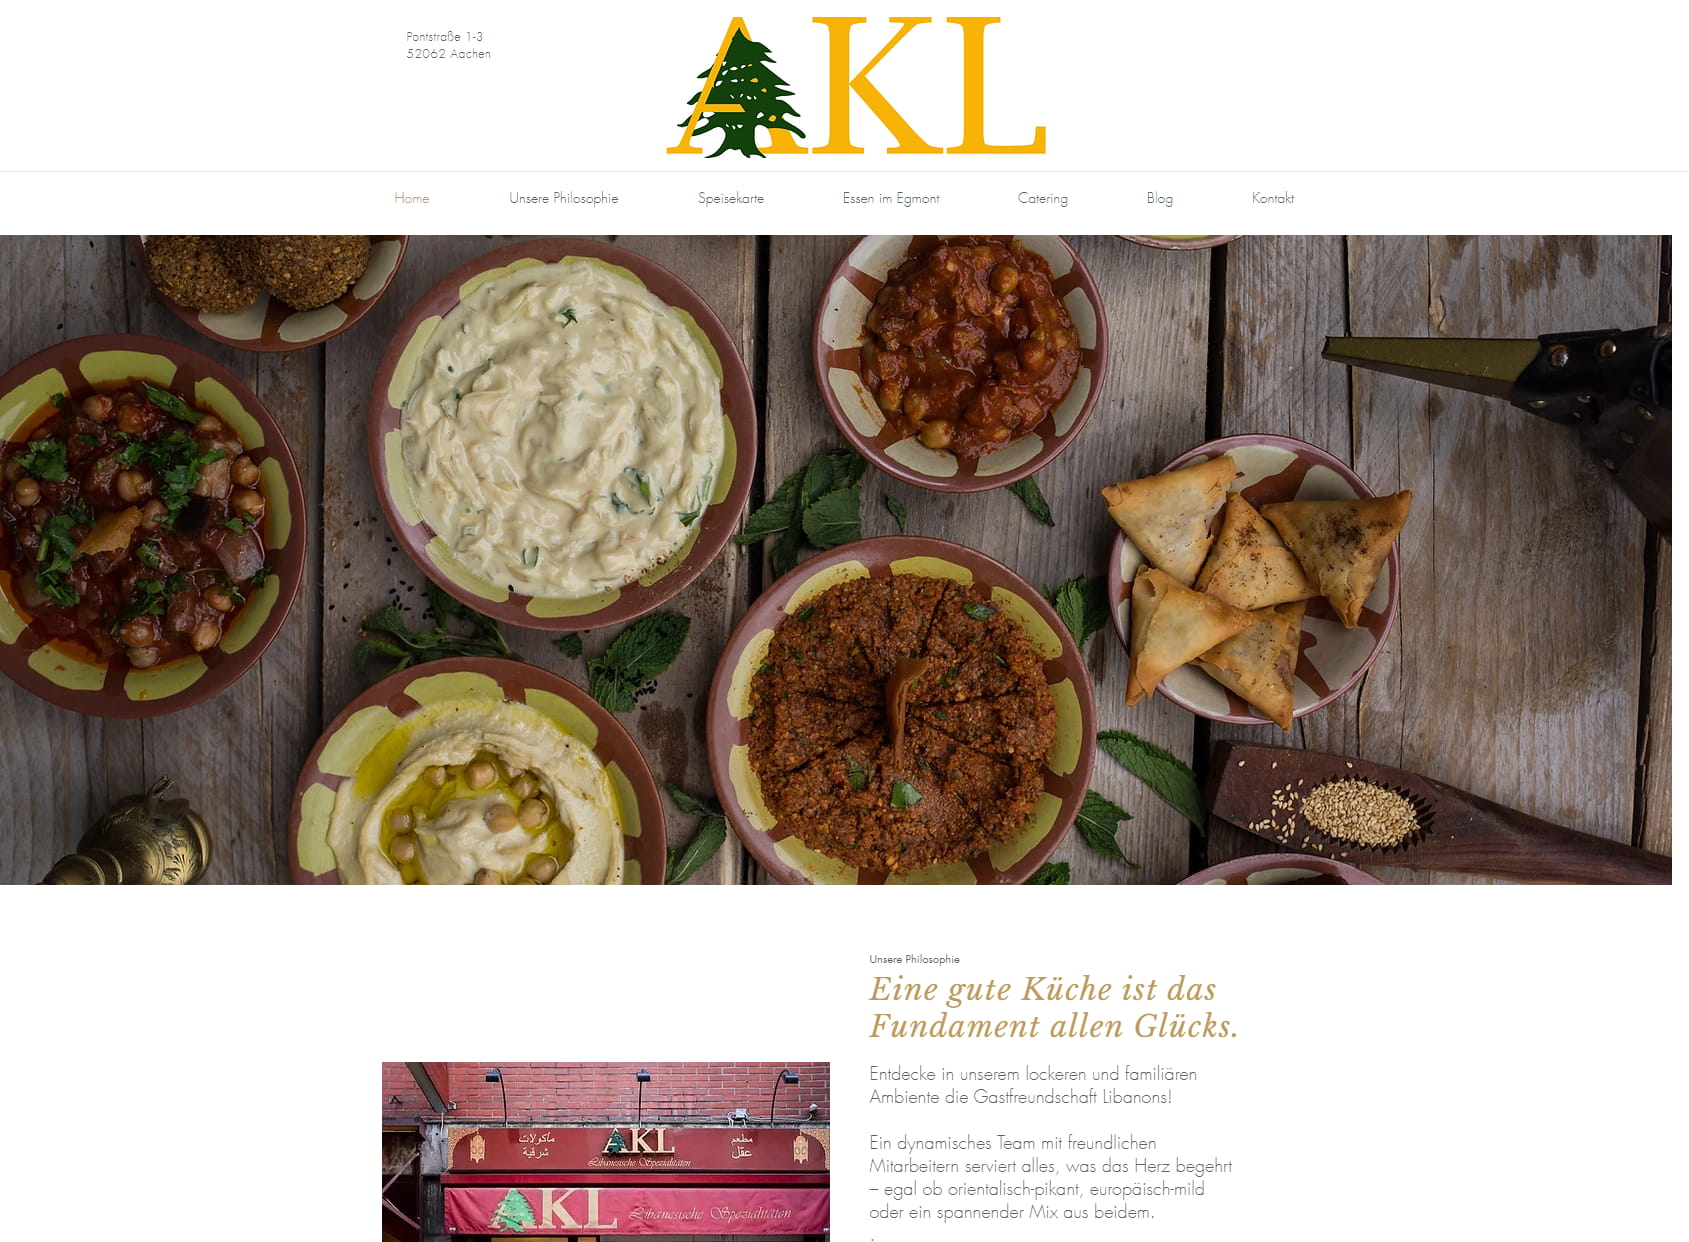 AKL Libanesisches Restaurant